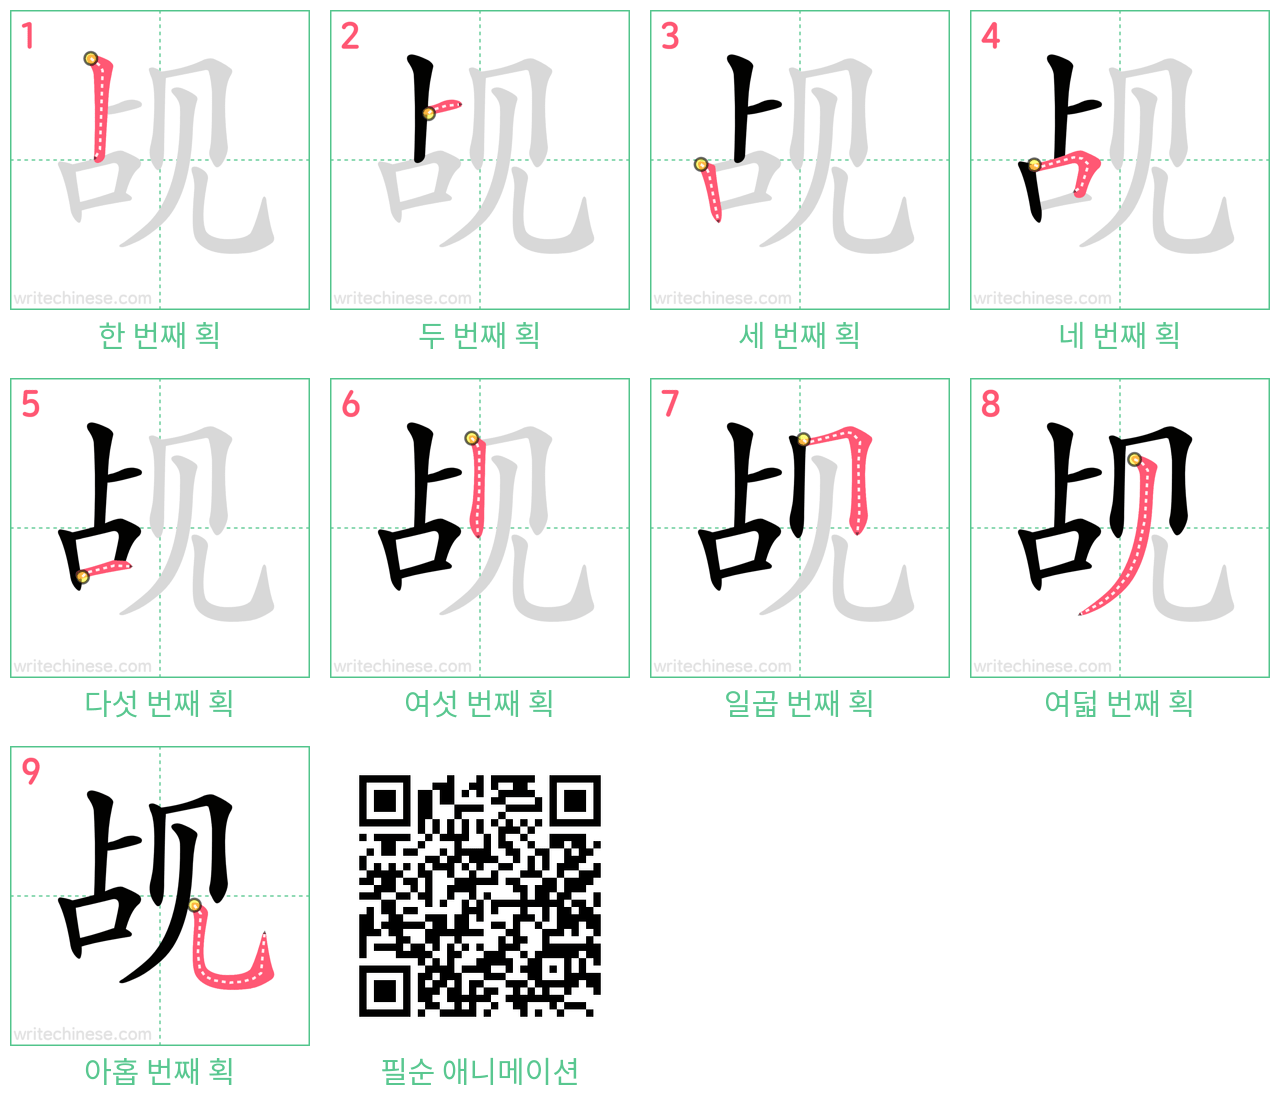 觇 step-by-step stroke order diagrams